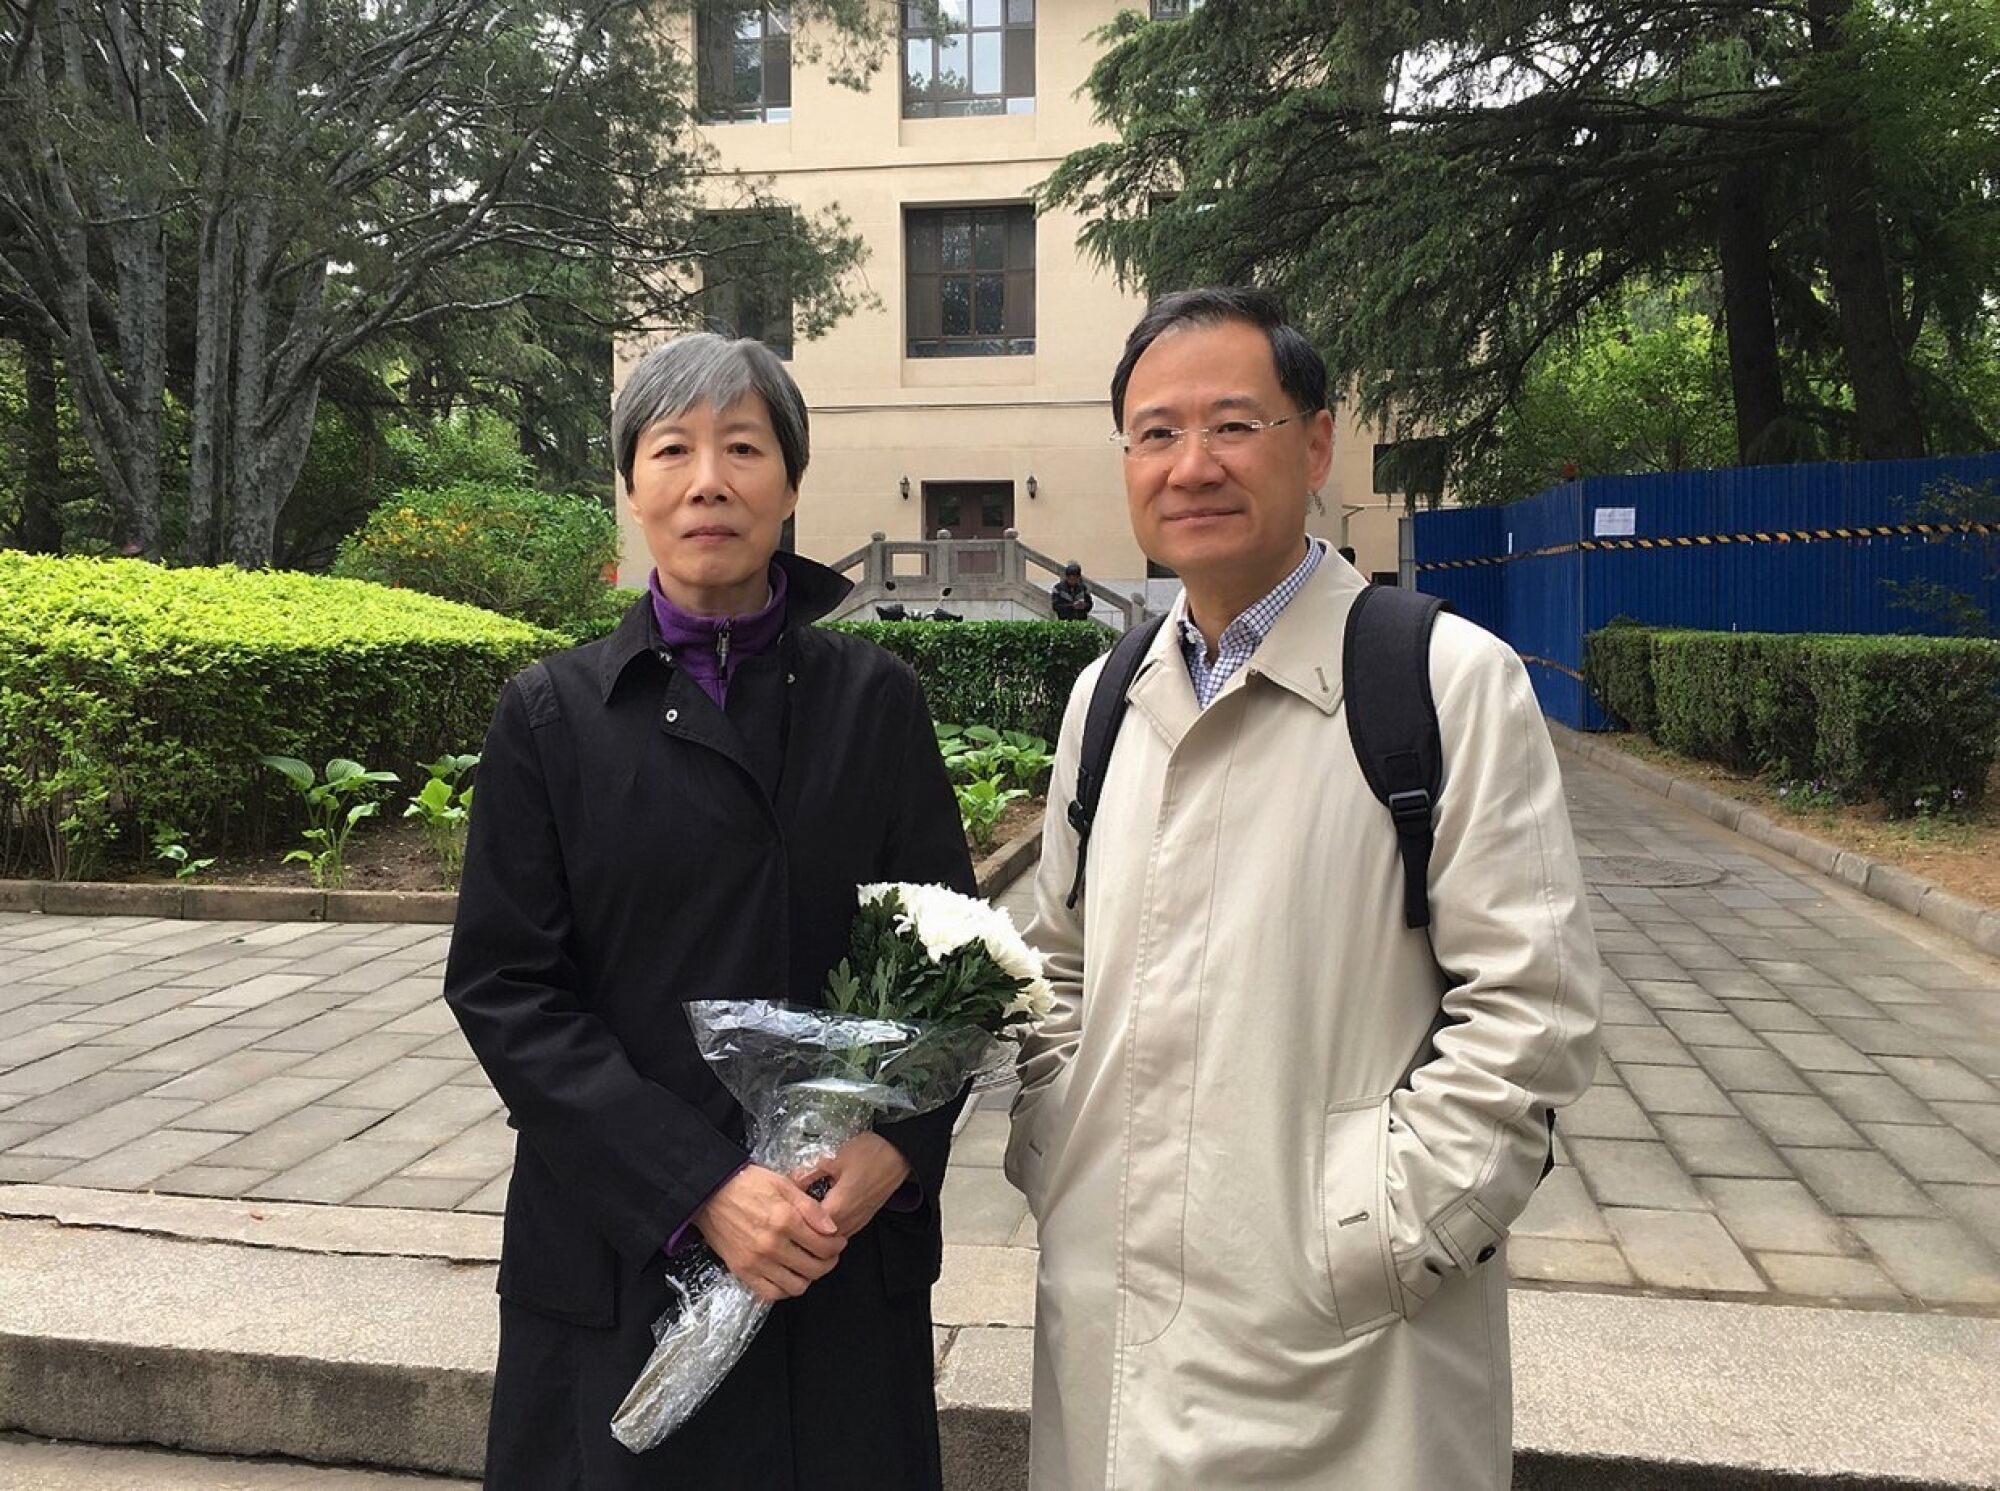 Guo Yuhua and Xu Zhangrun at Tsinghua University on April 28, 2019.